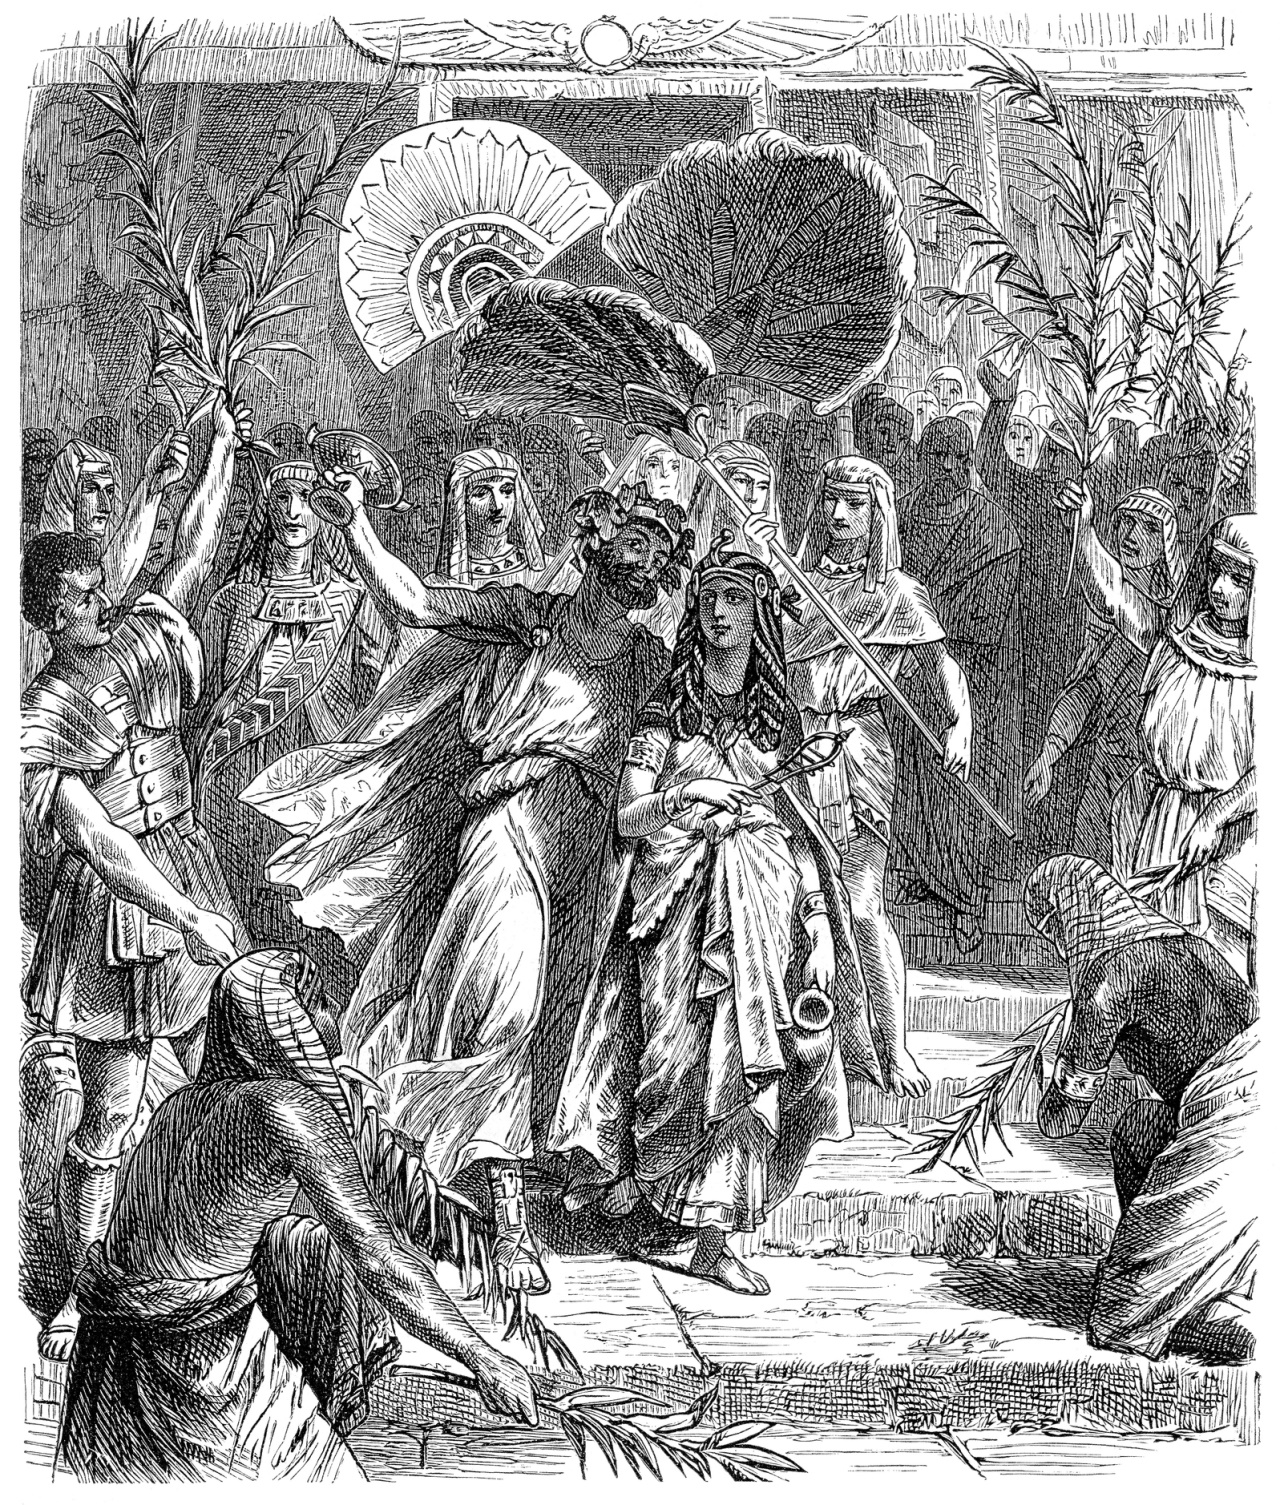 <p><strong>Марк Антоний и Клеопатра</strong></p>

<p>Антоний управлява Рим заедно с Октавиан и генерал Марк Лепид и Октавиан е разбираемо ядосан, когато Антоний се влюбва в Клеопатра и зарязва всичко, а пък и Антоний е женен за сестрата на Октавиан. Октавиан обявява война на Египет, побеждавайки Антоний и Клеопатра, които се самоубиват, а Октавиан поема пълен контрол над Римската империя.</p>